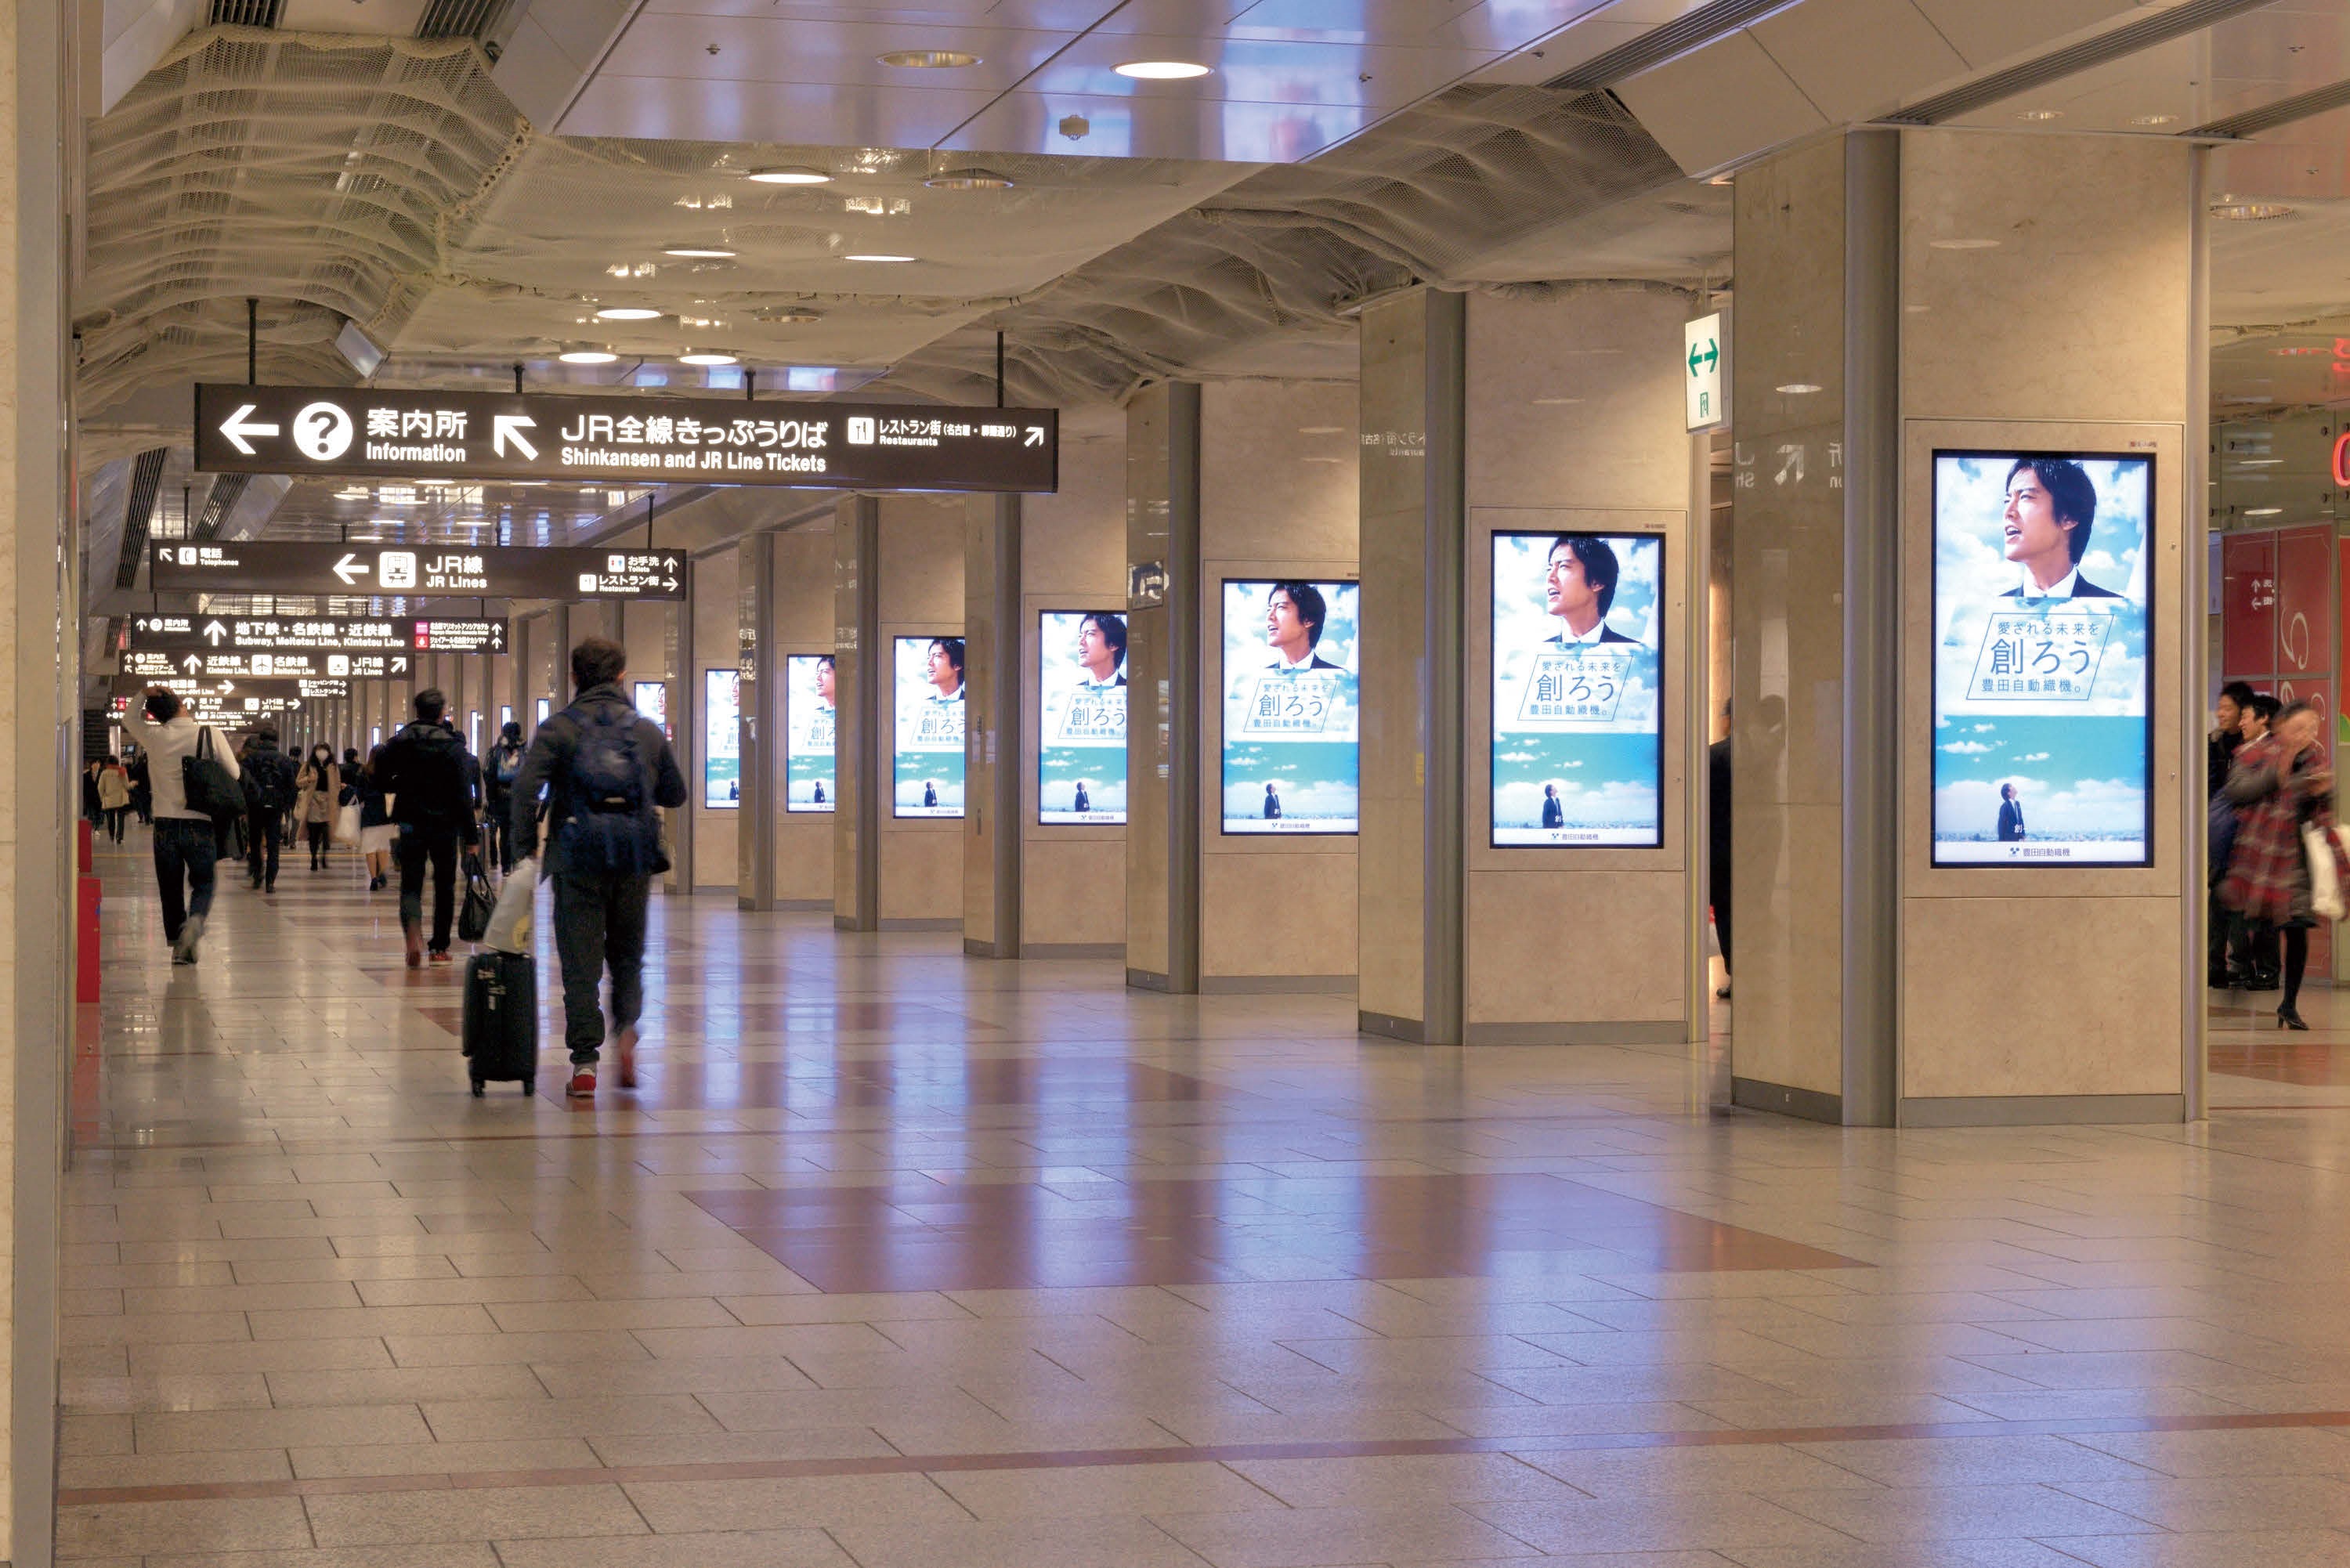 東海道新幹線改札前の55インチ×18面の「名古屋エクスプレスビジョン」と、名古屋駅中央コンコース計100面の「シリーズ・アド・ビジョン名古屋」を活用。